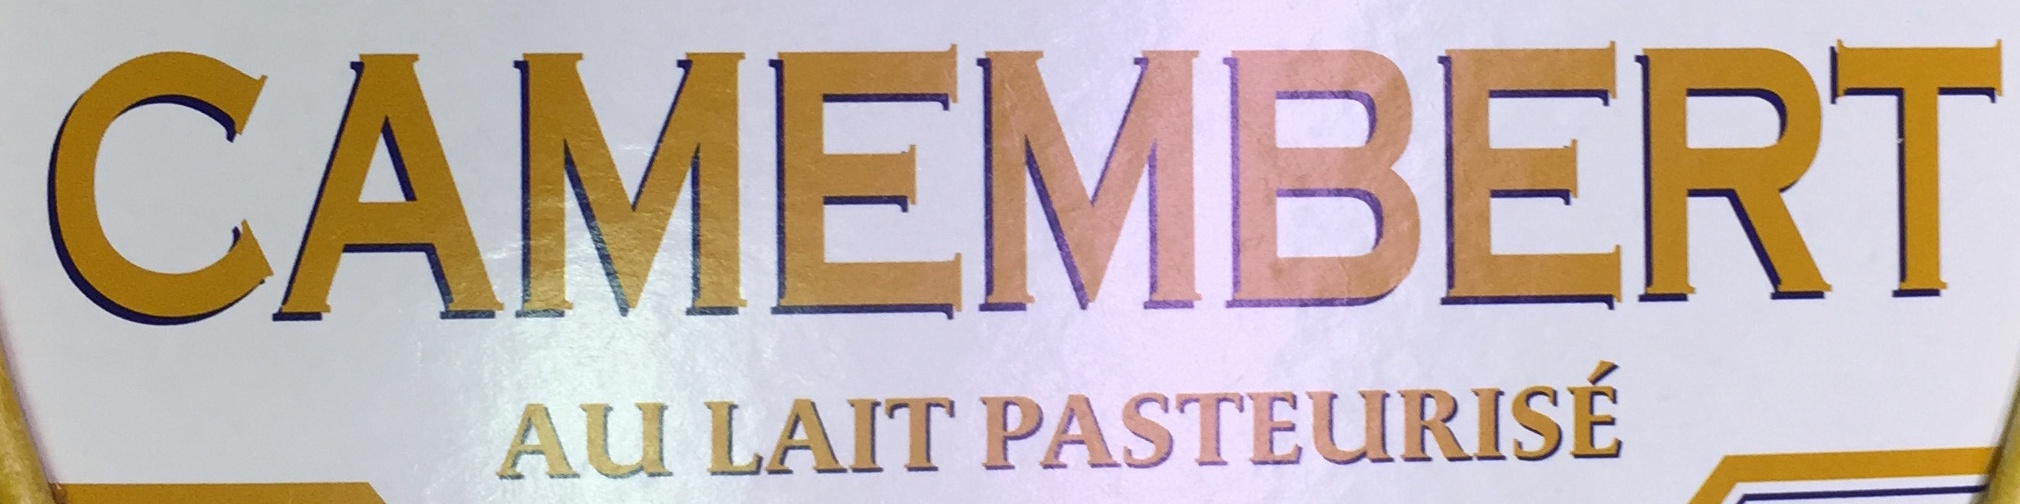 Camembert au Lait Pasteurisé (23 % MG) - Ingredients - fr